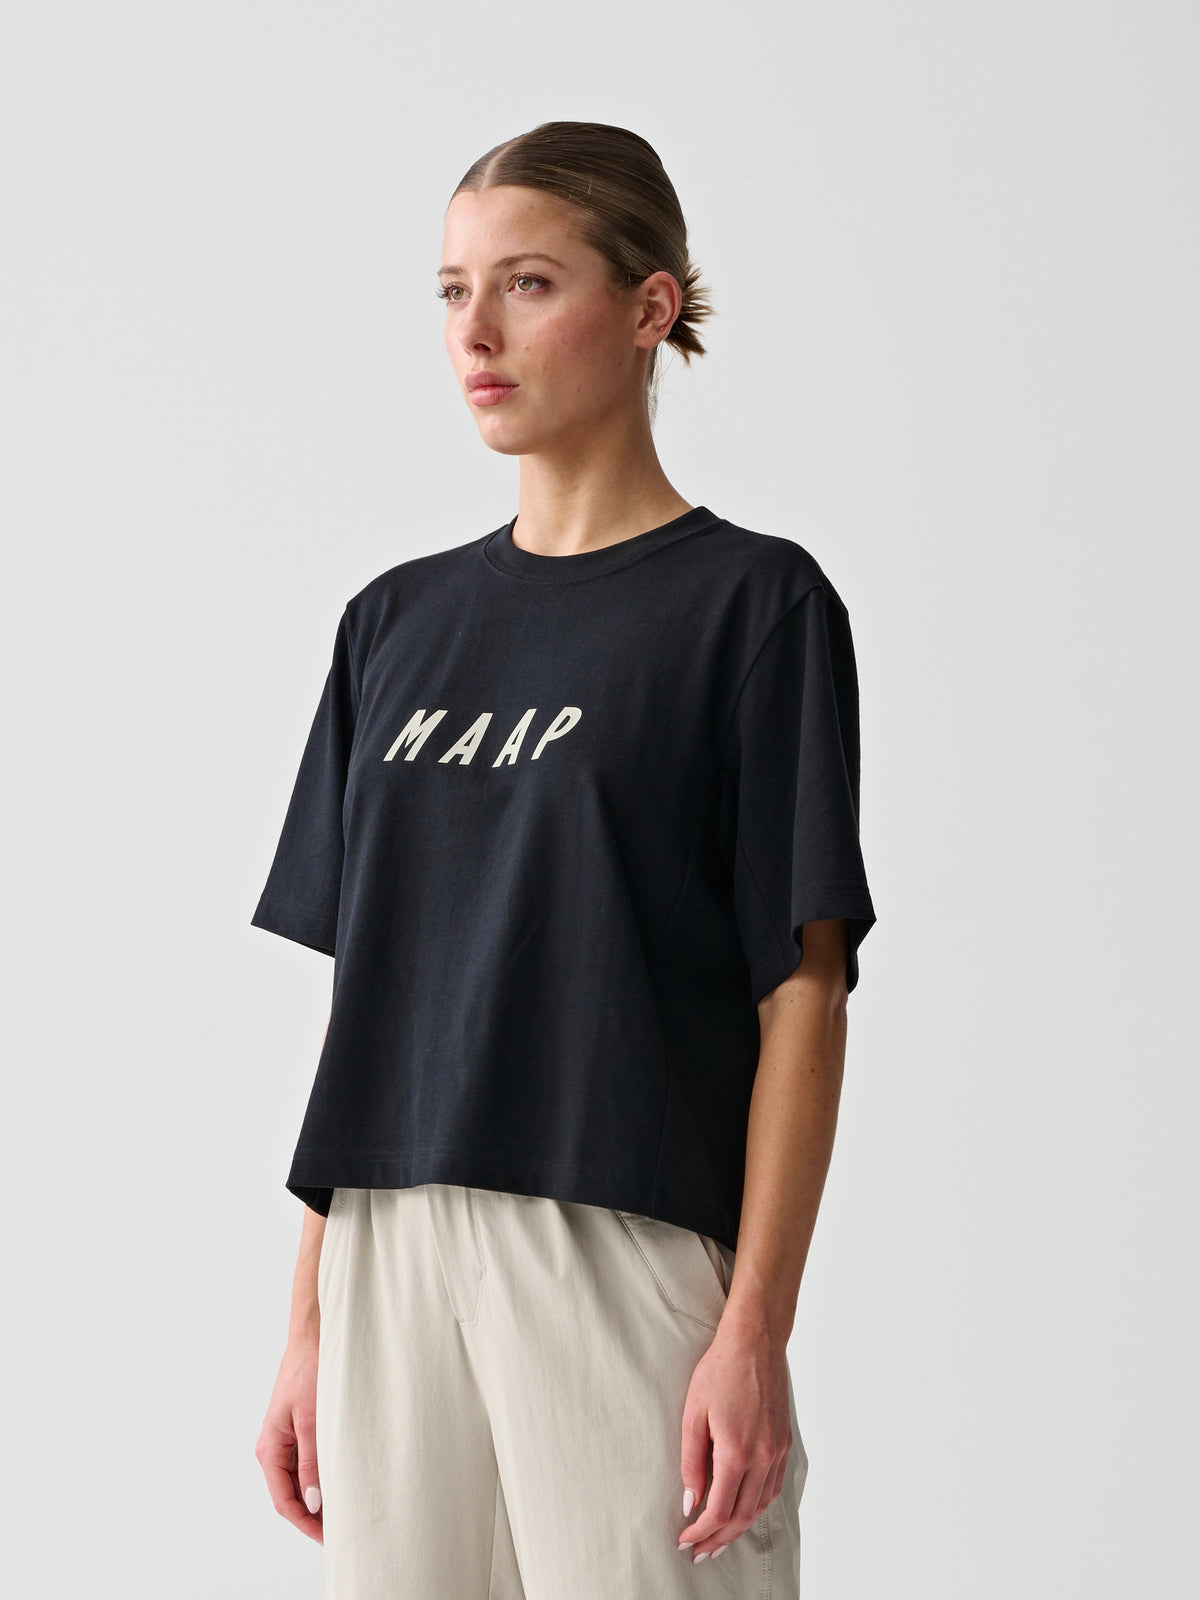 MAAP Lifeplus-Wahoo Replica ロングスリーブ レディース Tシャツ | CYCLISM